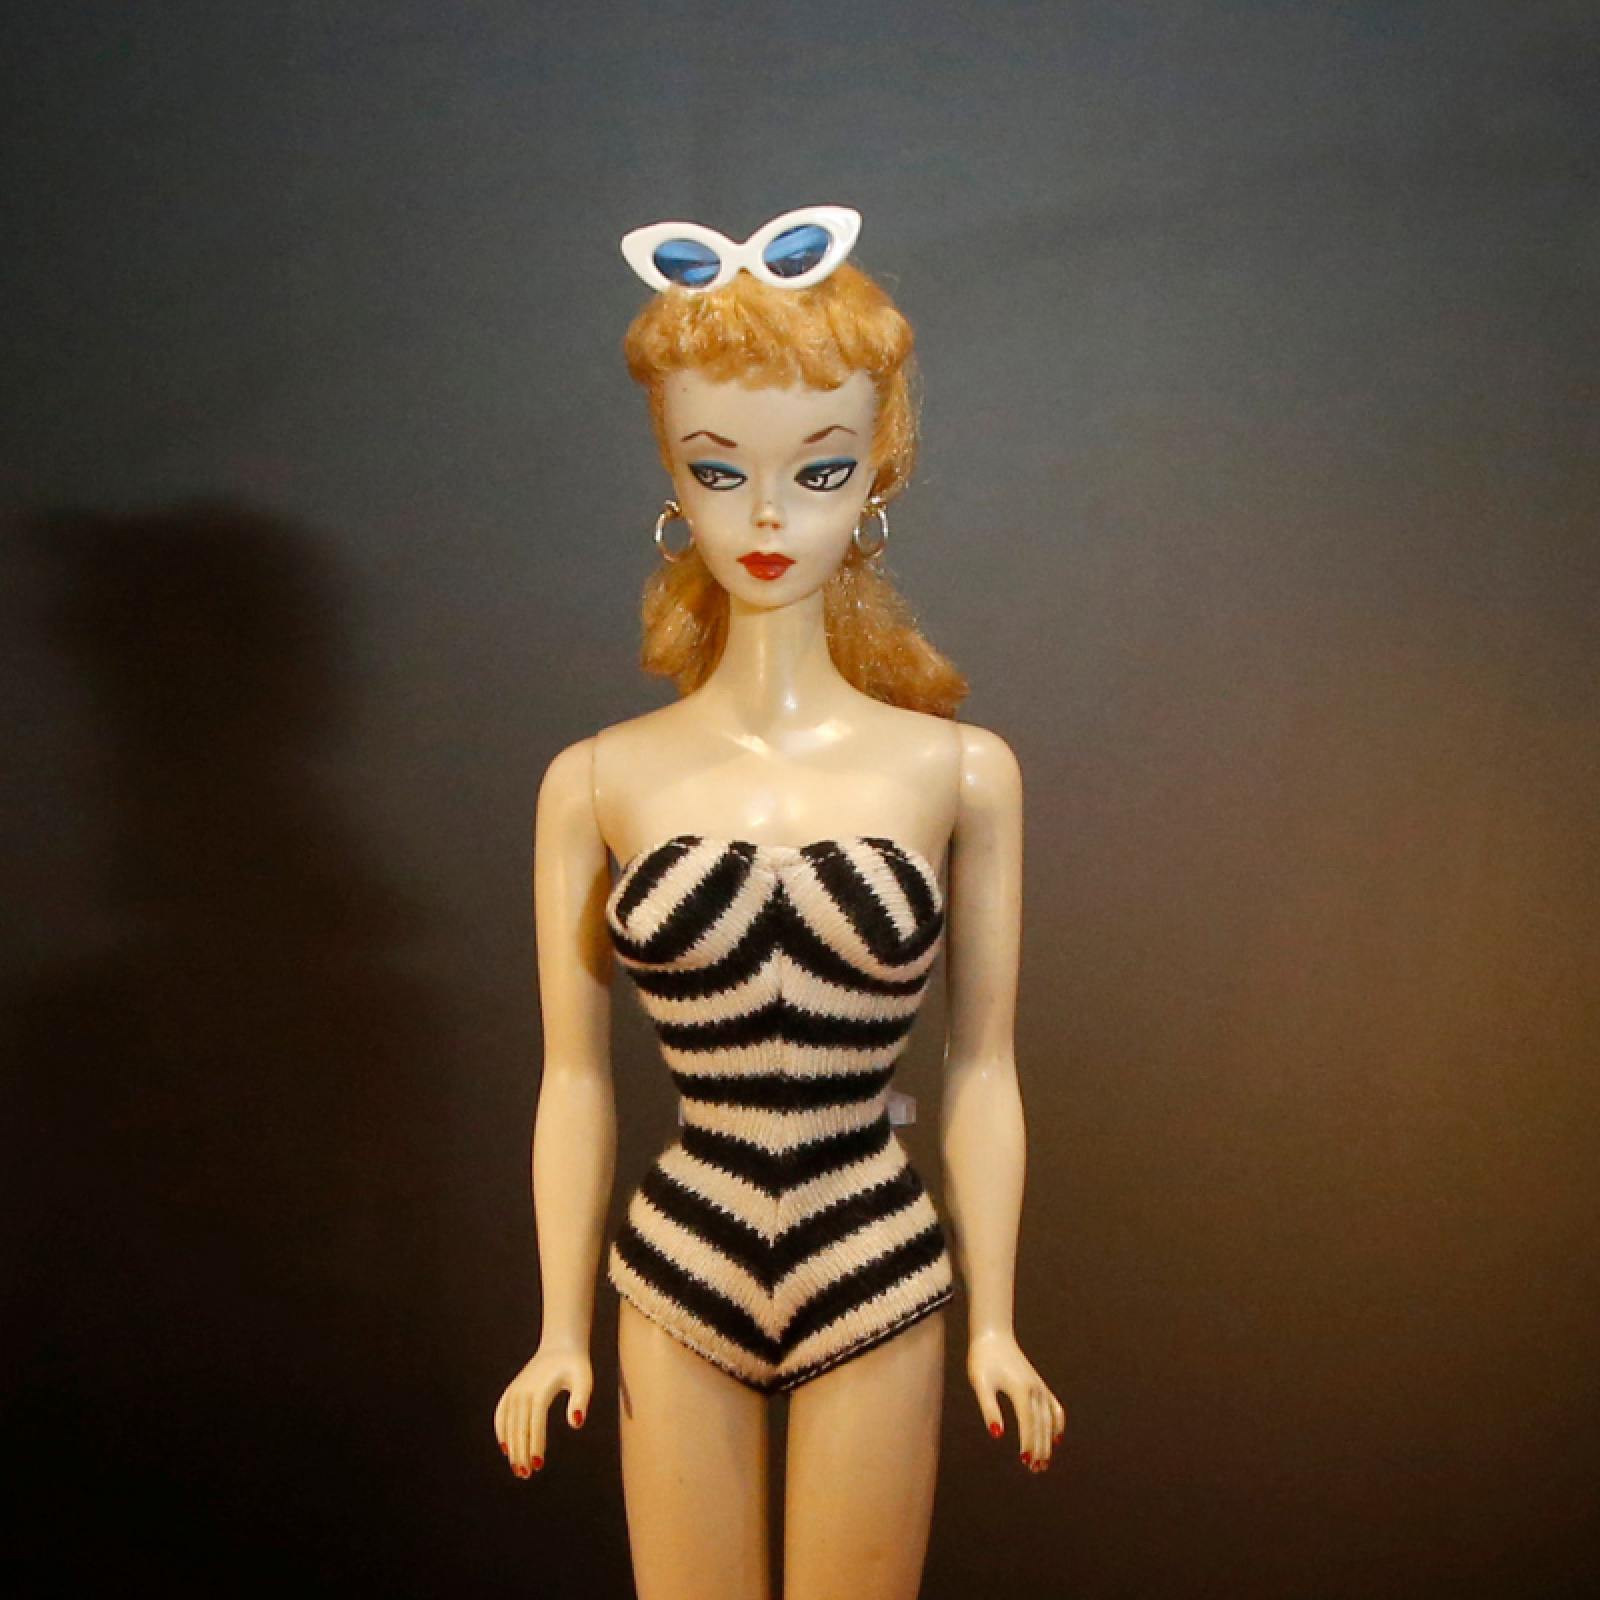 Vintage Barbie Accessories Values - Dr. Lori Antiques Appraiser